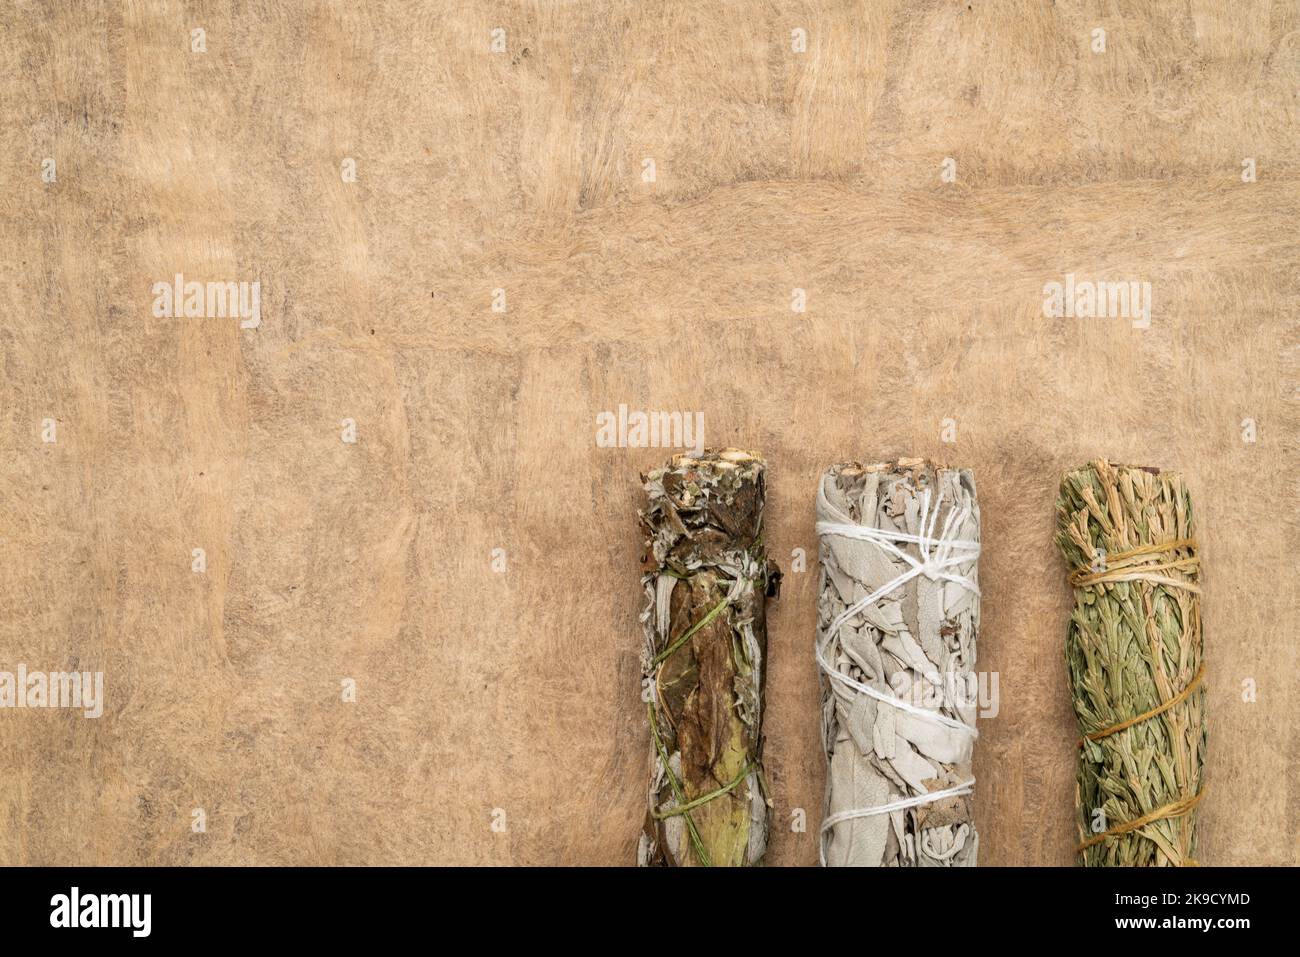 Weißer Salbei, Beifuß und siskiyou Zedernholz-Räucherstäbchen auf einem strukturierten Rindenpapier mit einem Kopierraum, Aromatherapie-Konzept Stockfoto